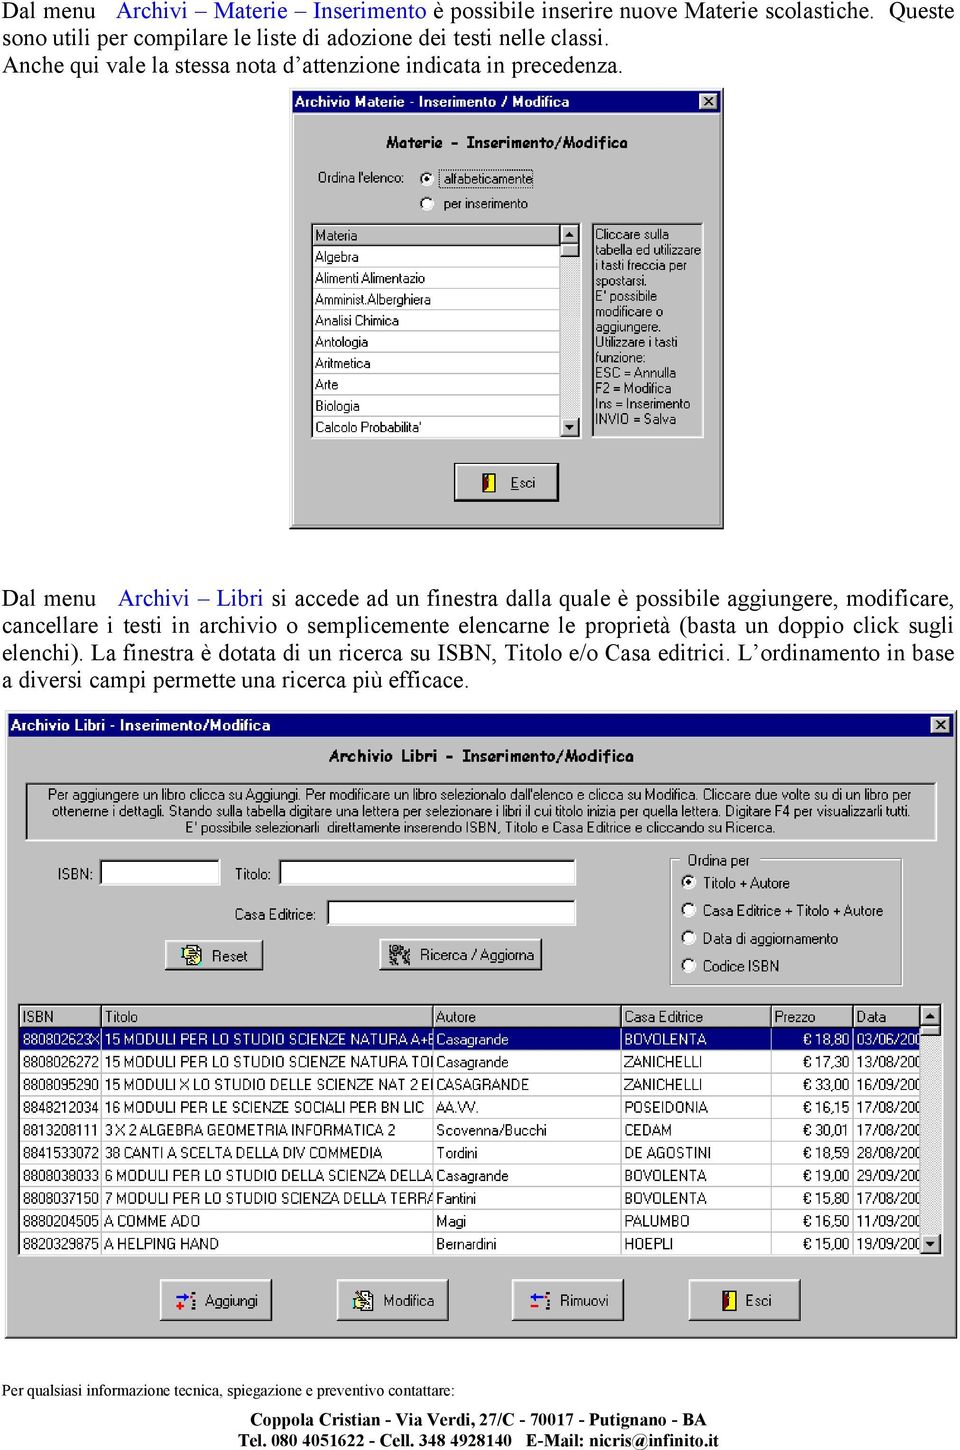 Dal menu Archivi Libri si accede ad un finestra dalla quale è possibile aggiungere, modificare, cancellare i testi in archivio o semplicemente